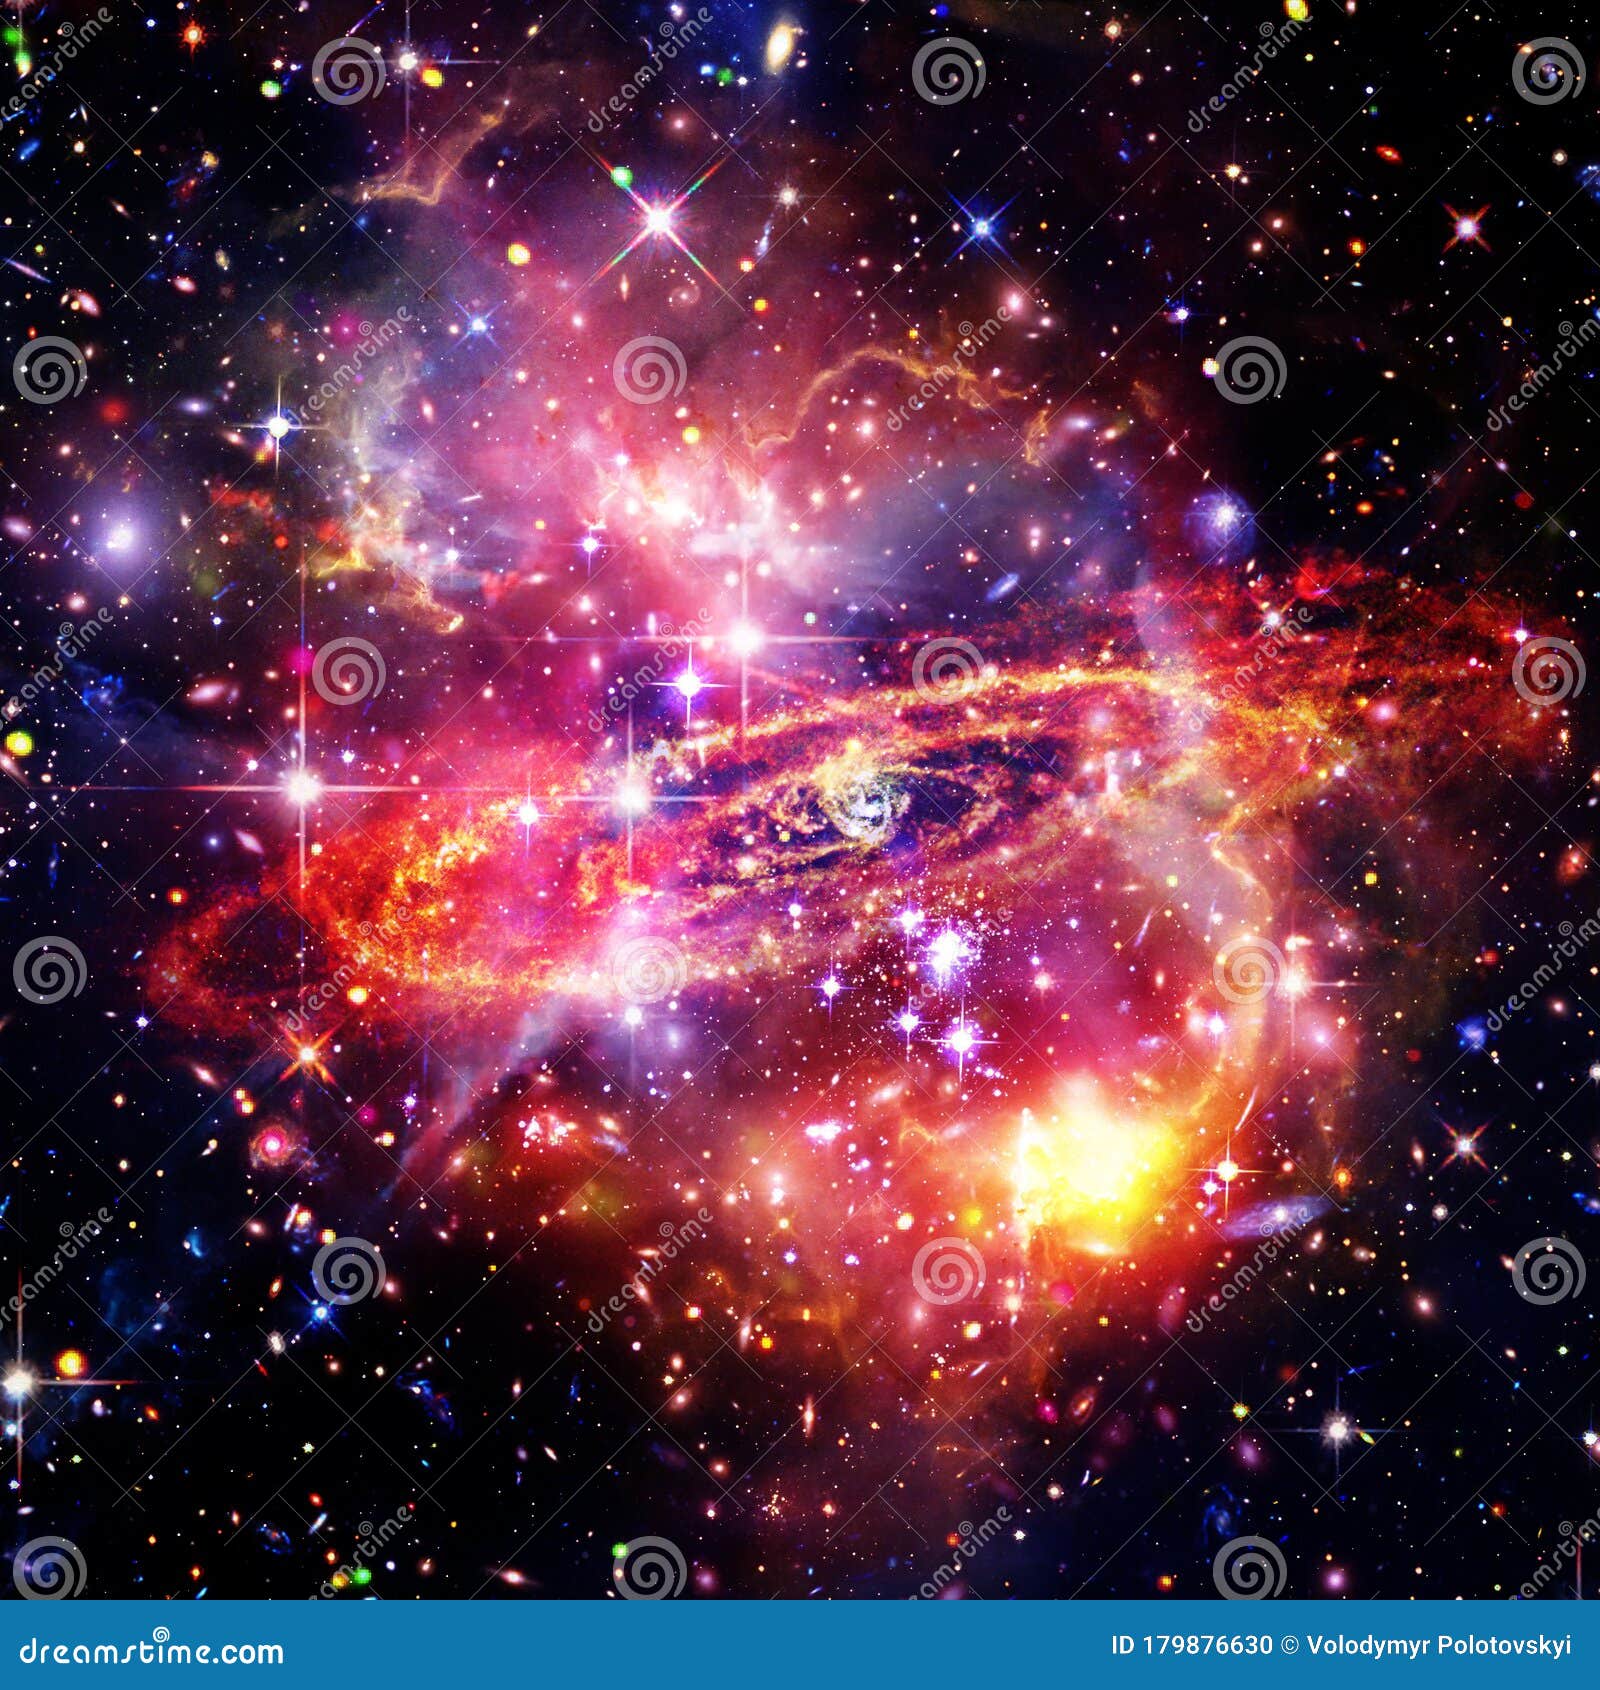 Vũ trụ đầy màu sắc: Không gian vũ trụ không chỉ bao gồm màu đen và trắng. Điều đó chứng tỏ rằng, vũ trụ đầy màu sắc tuyệt vời. Tất cả các ngôi sao, hành tinh và thiên hà đều có màu sắc riêng, tạo nên một bức tranh vô cùng tuyệt đẹp. Nhấn vào hình ảnh để khám phá bí mật của không gian vũ trụ đầy màu sắc.